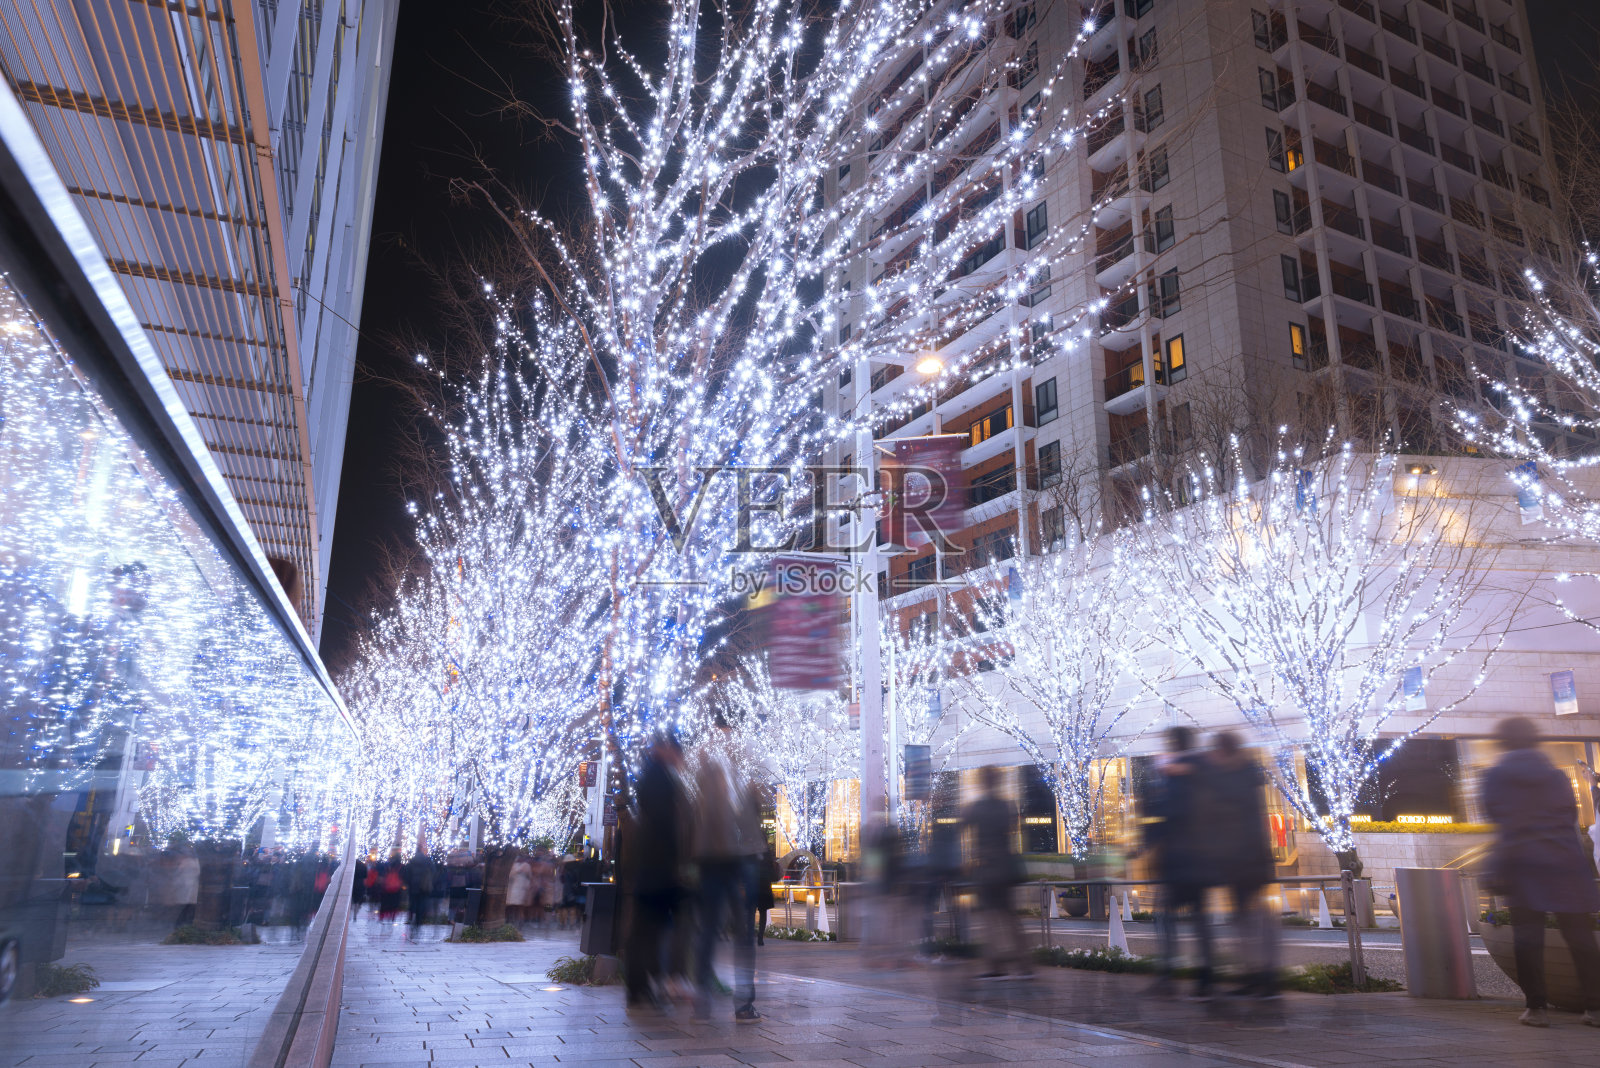 日本东京六本木Keyakizaka的圣诞彩灯照片摄影图片